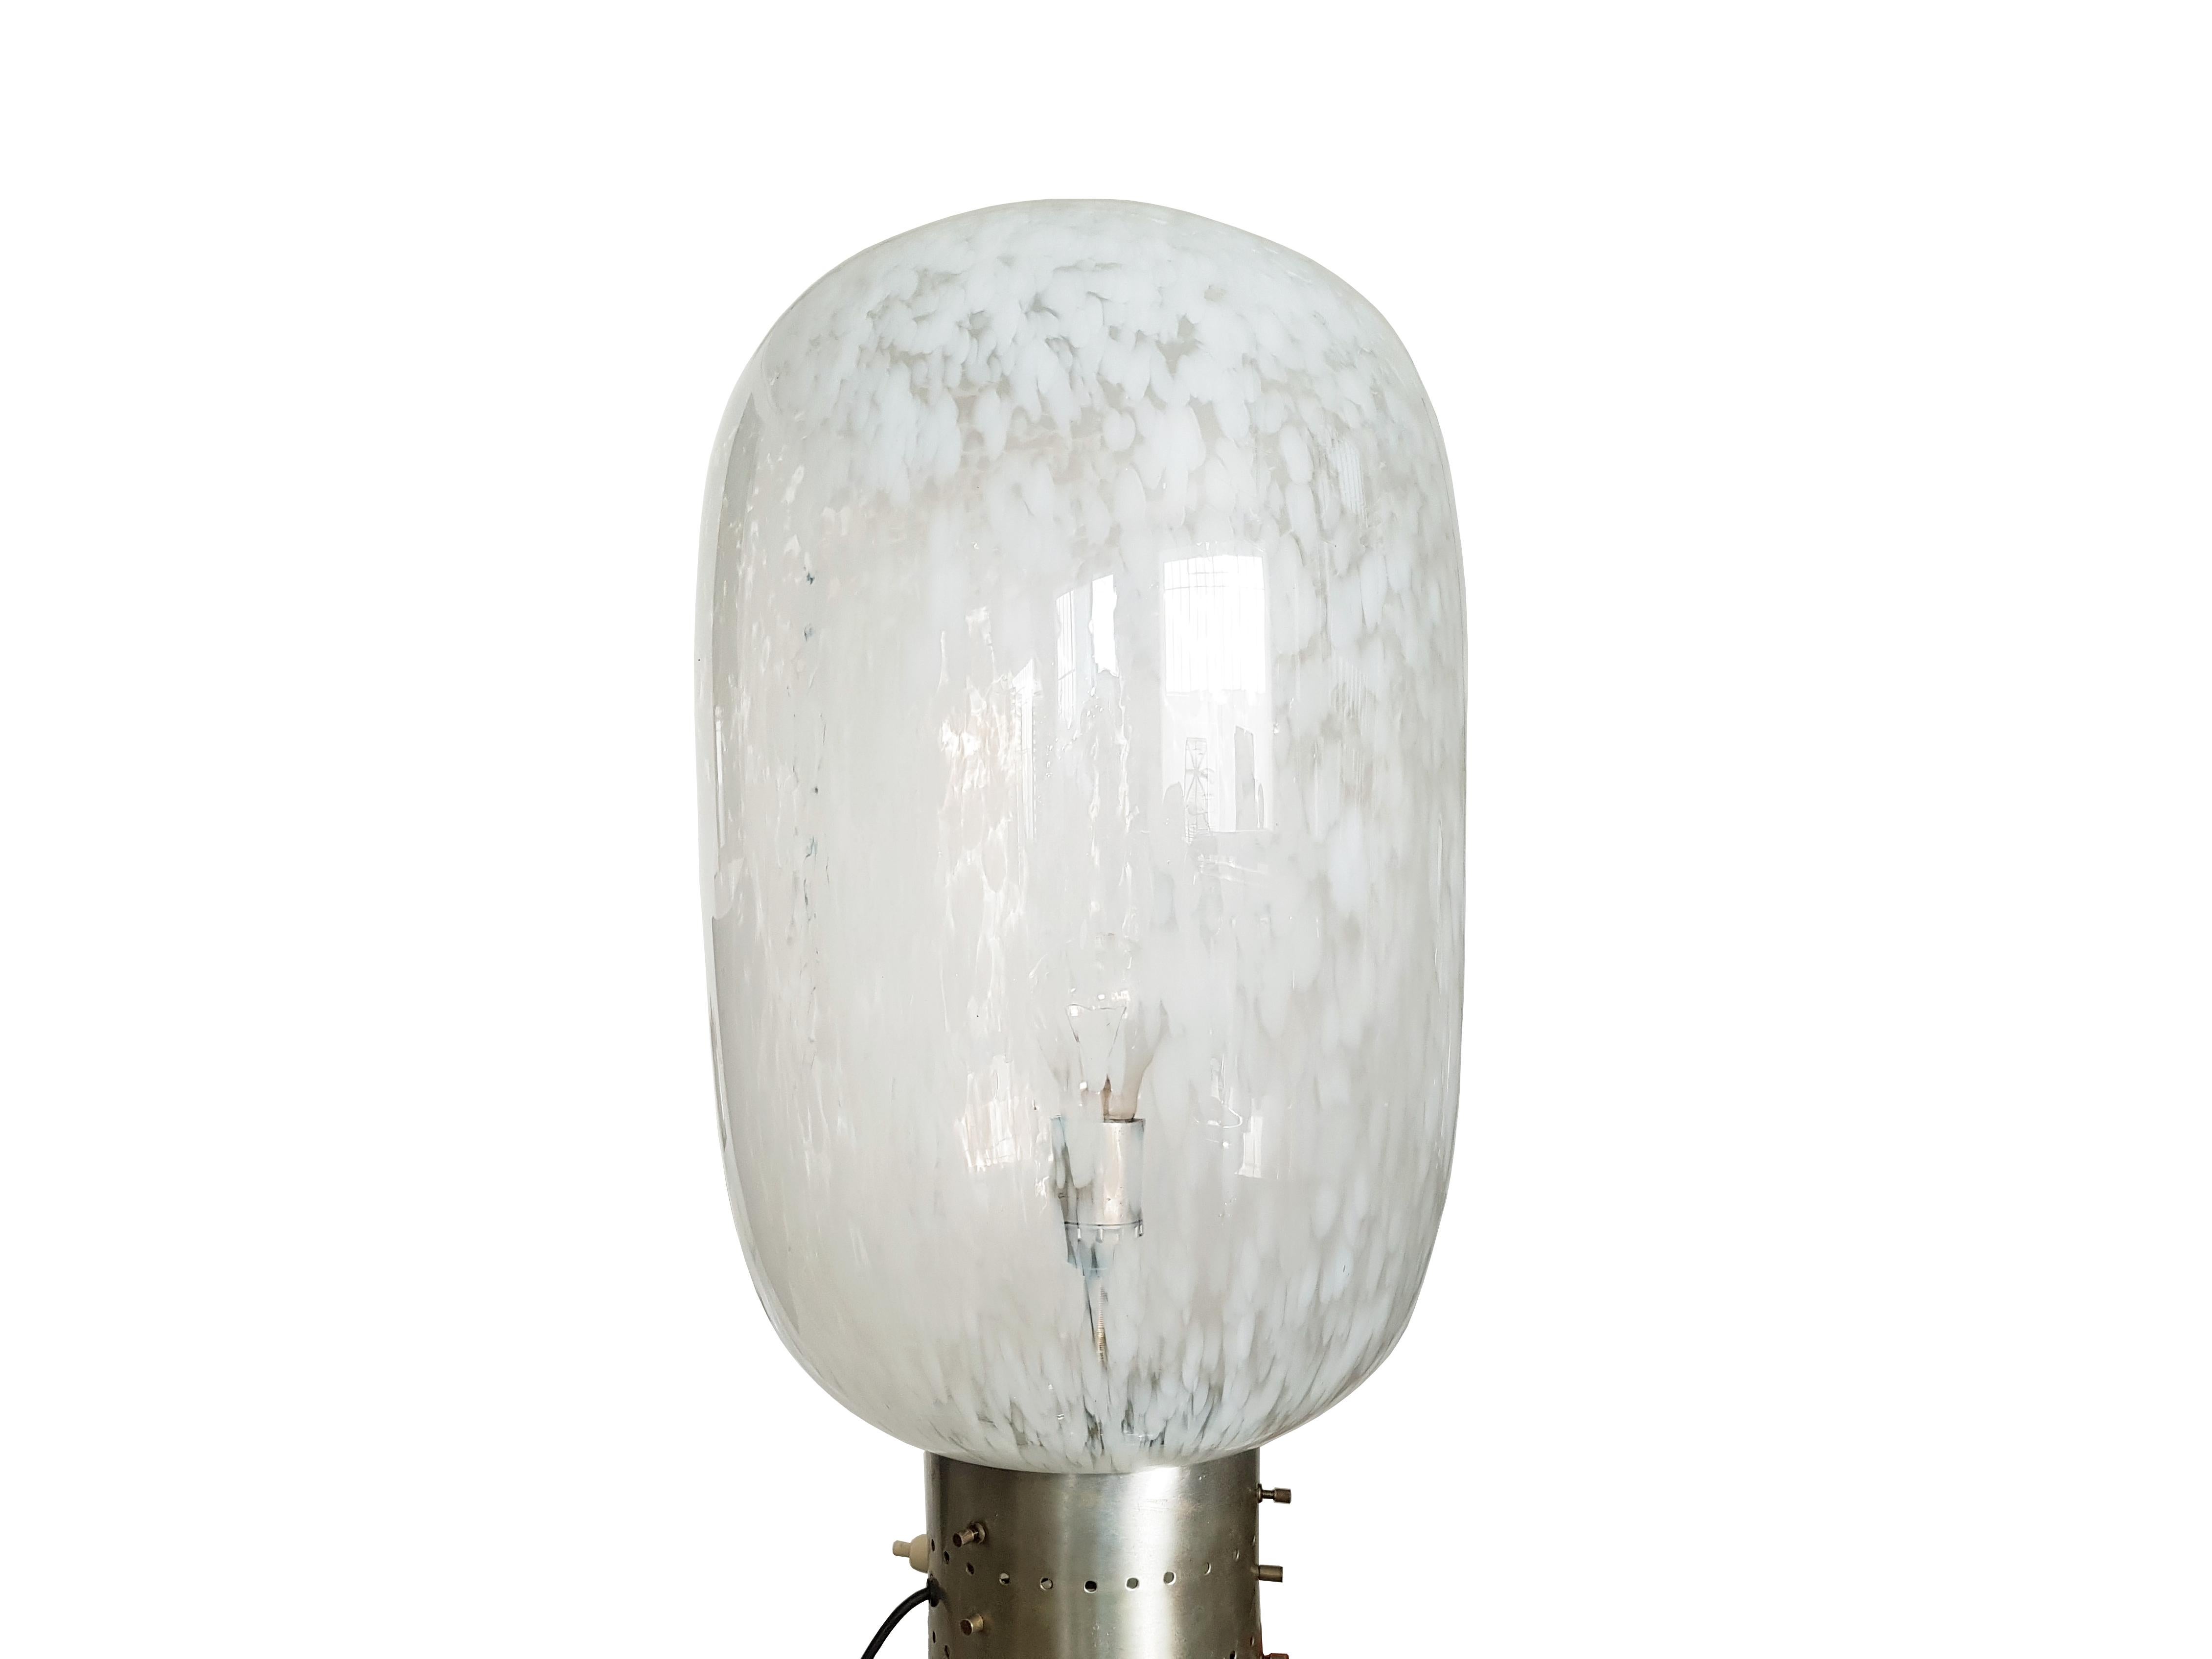 Diese schöne Stehlampe wurde um 1960 in Italien hergestellt. Sie besteht aus 2 handgefertigten Muranoglasschirmen, die durch einen zylindrischen Metallgürtel miteinander verbunden sind.
Die Leuchte verfügt über 2 E27-Glühbirnenfassungen, die